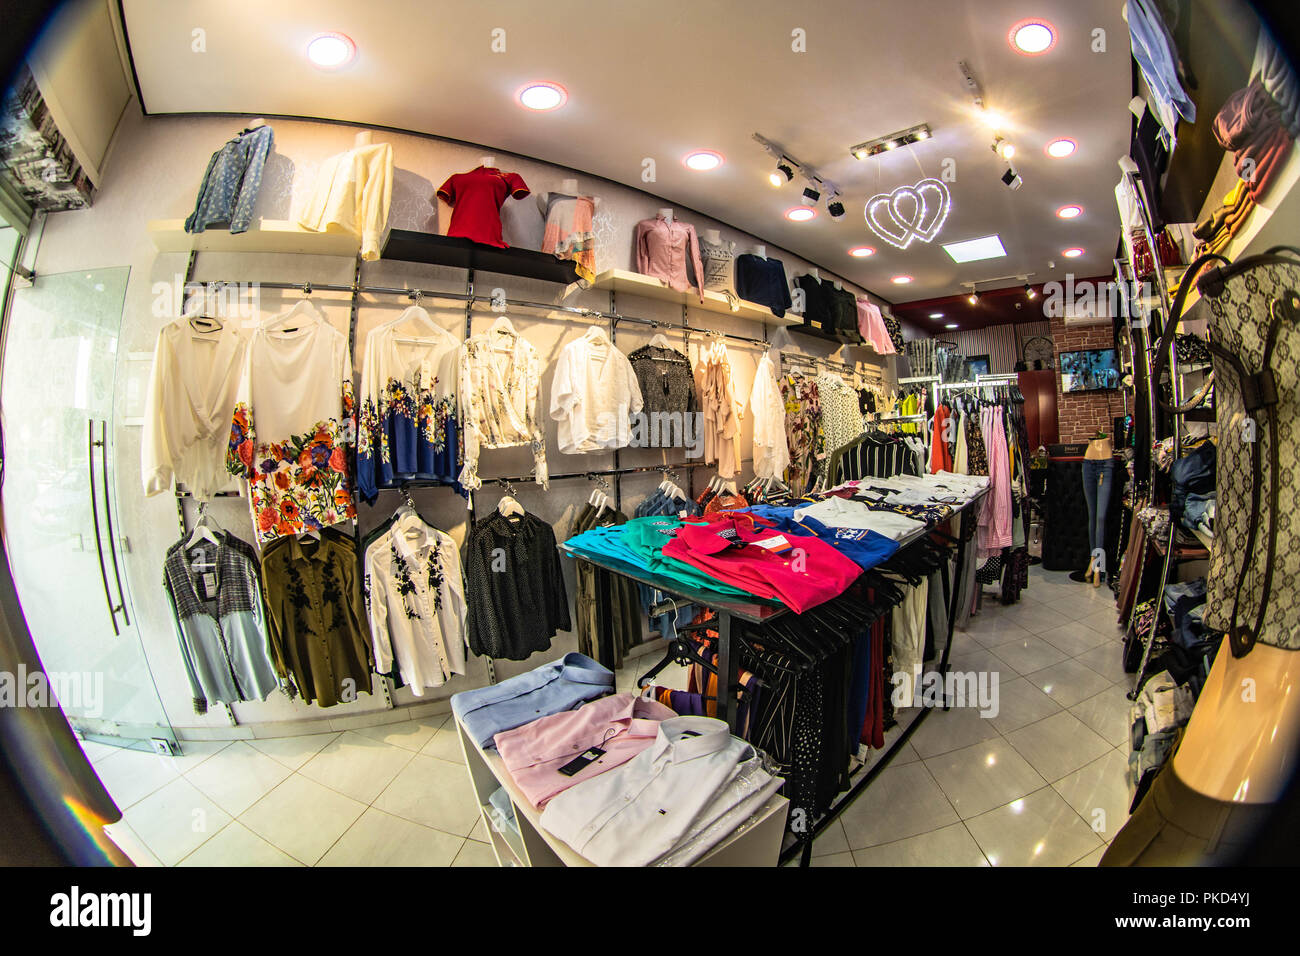 Boutique de vêtements homme femme fashion Shopping touna house Photo Stock  - Alamy